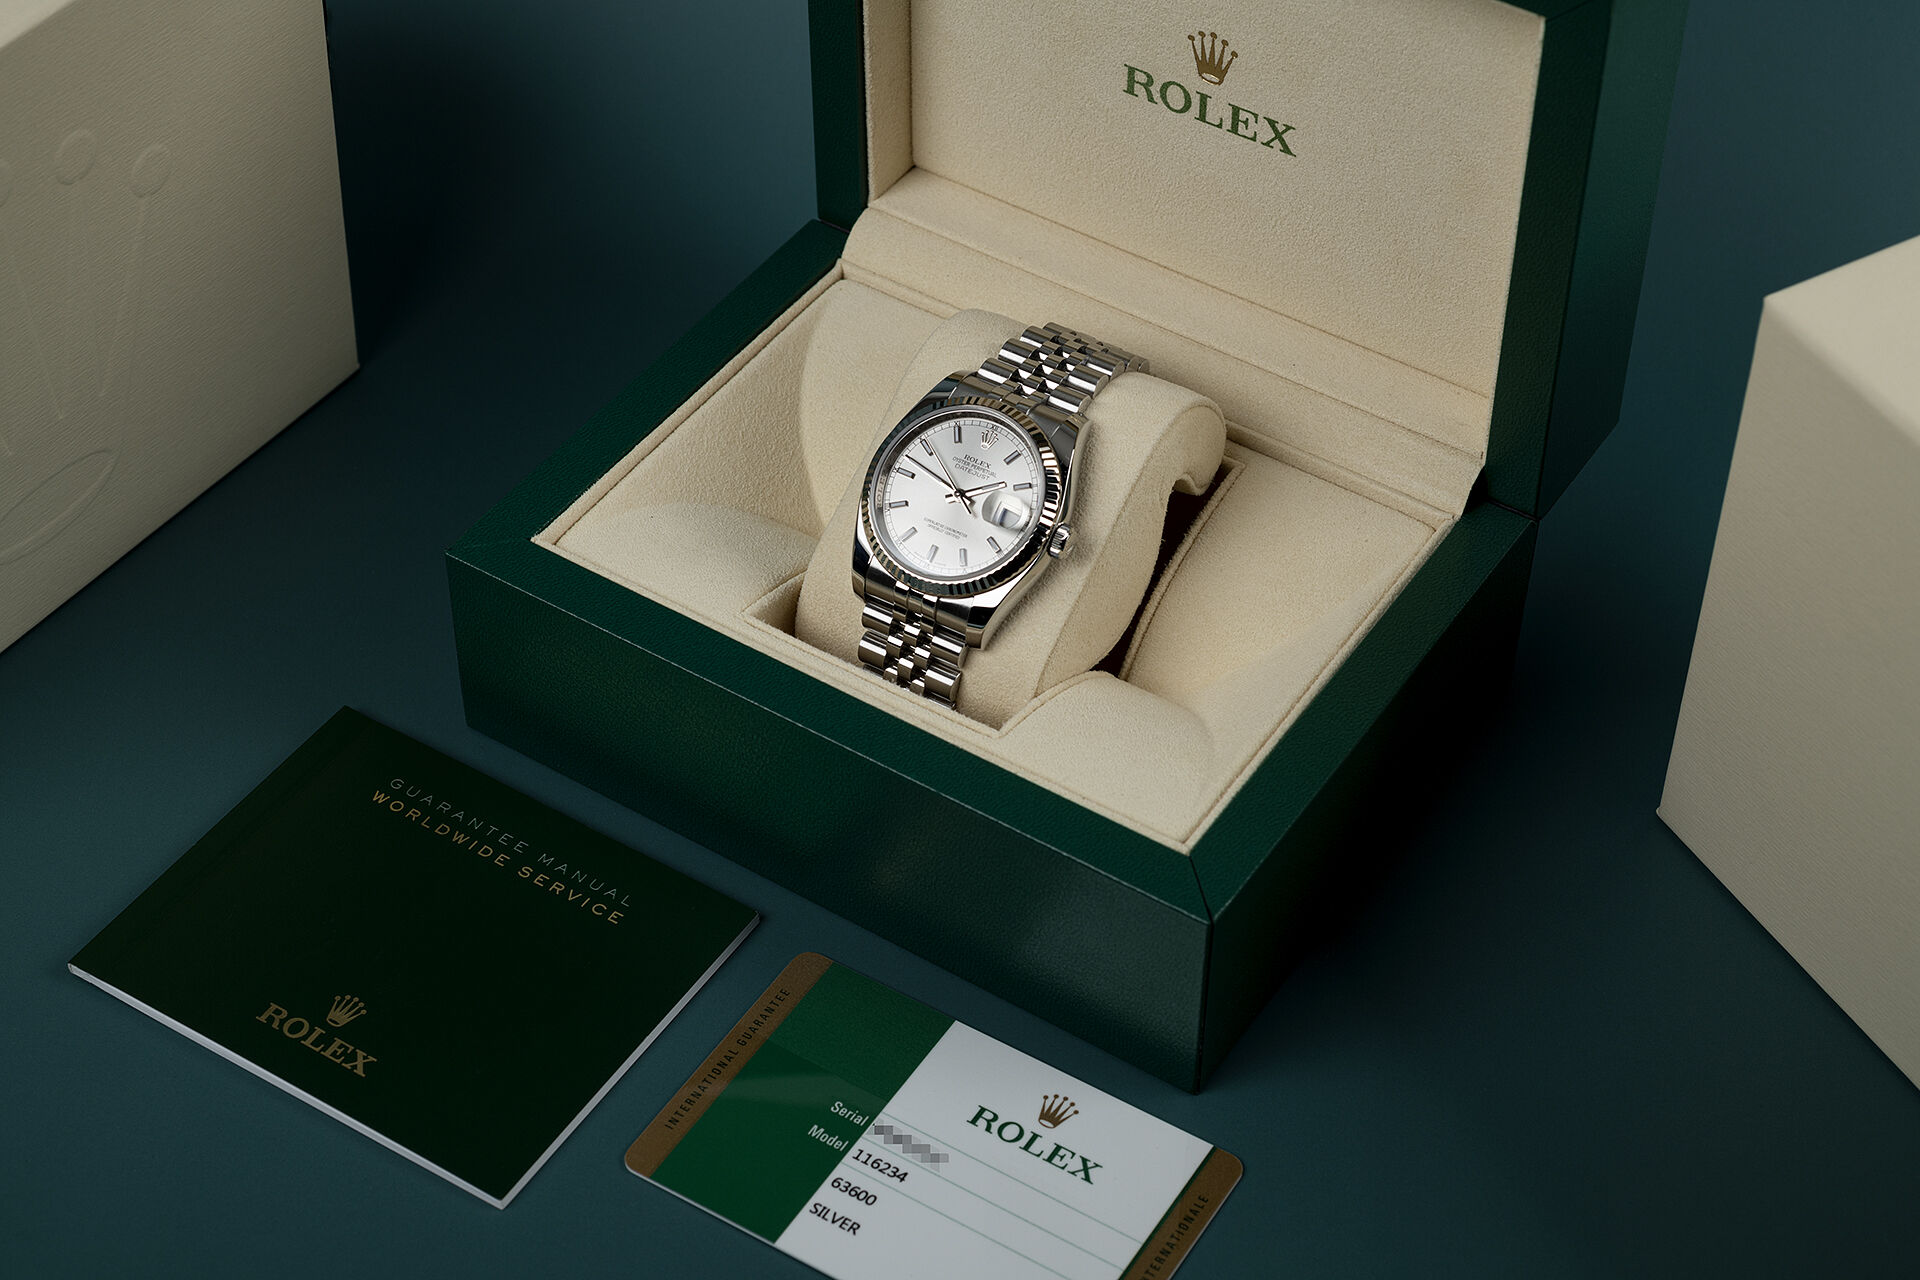 ref 116234 | Box & Certificate | Rolex Datejust